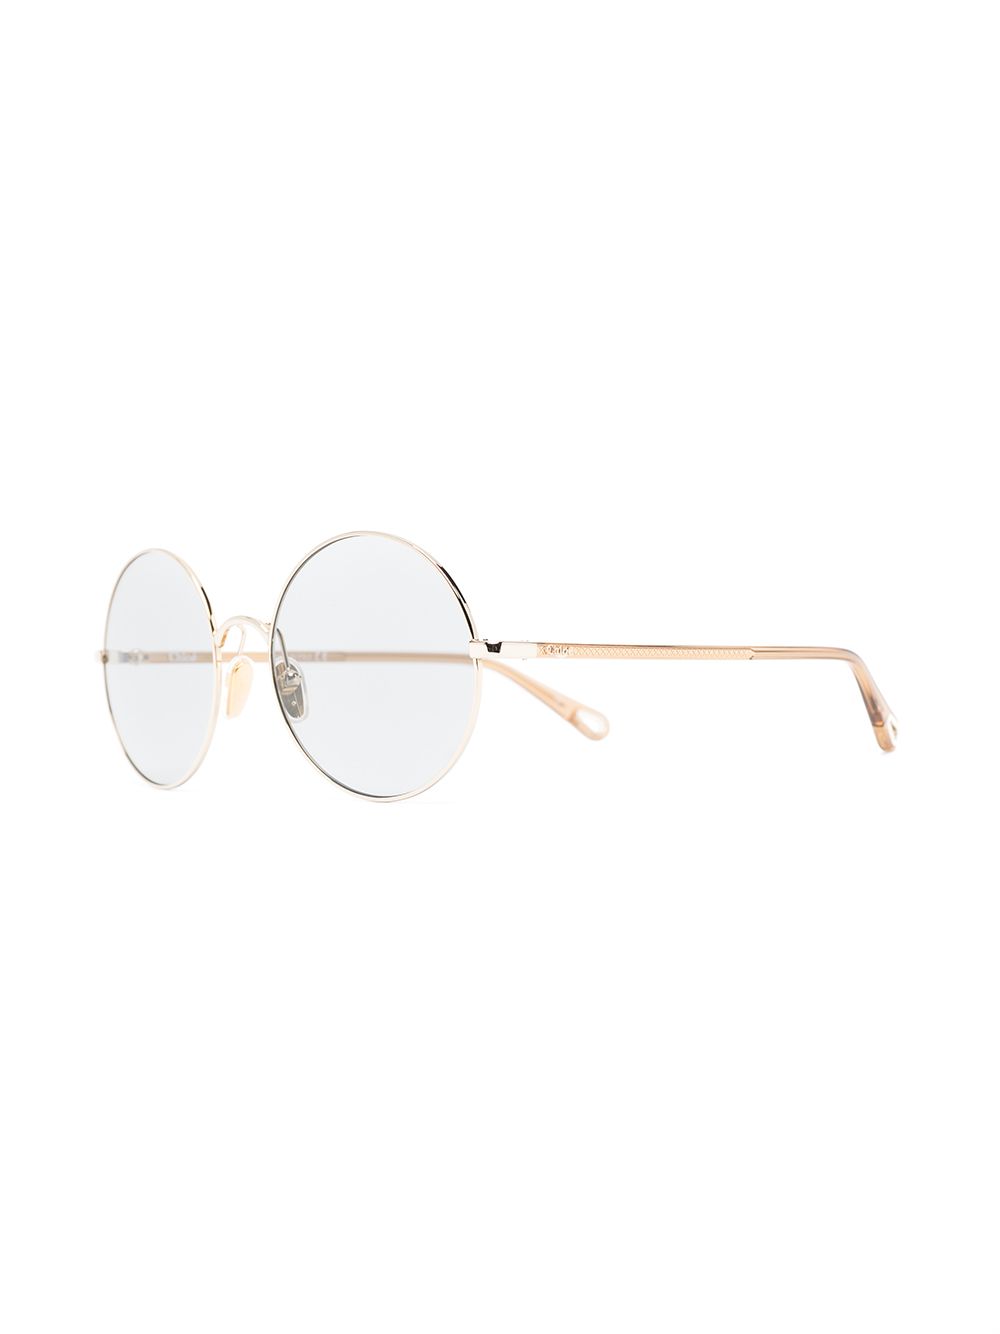 фото Chloé eyewear солнцезащитные очки со съемными линзами